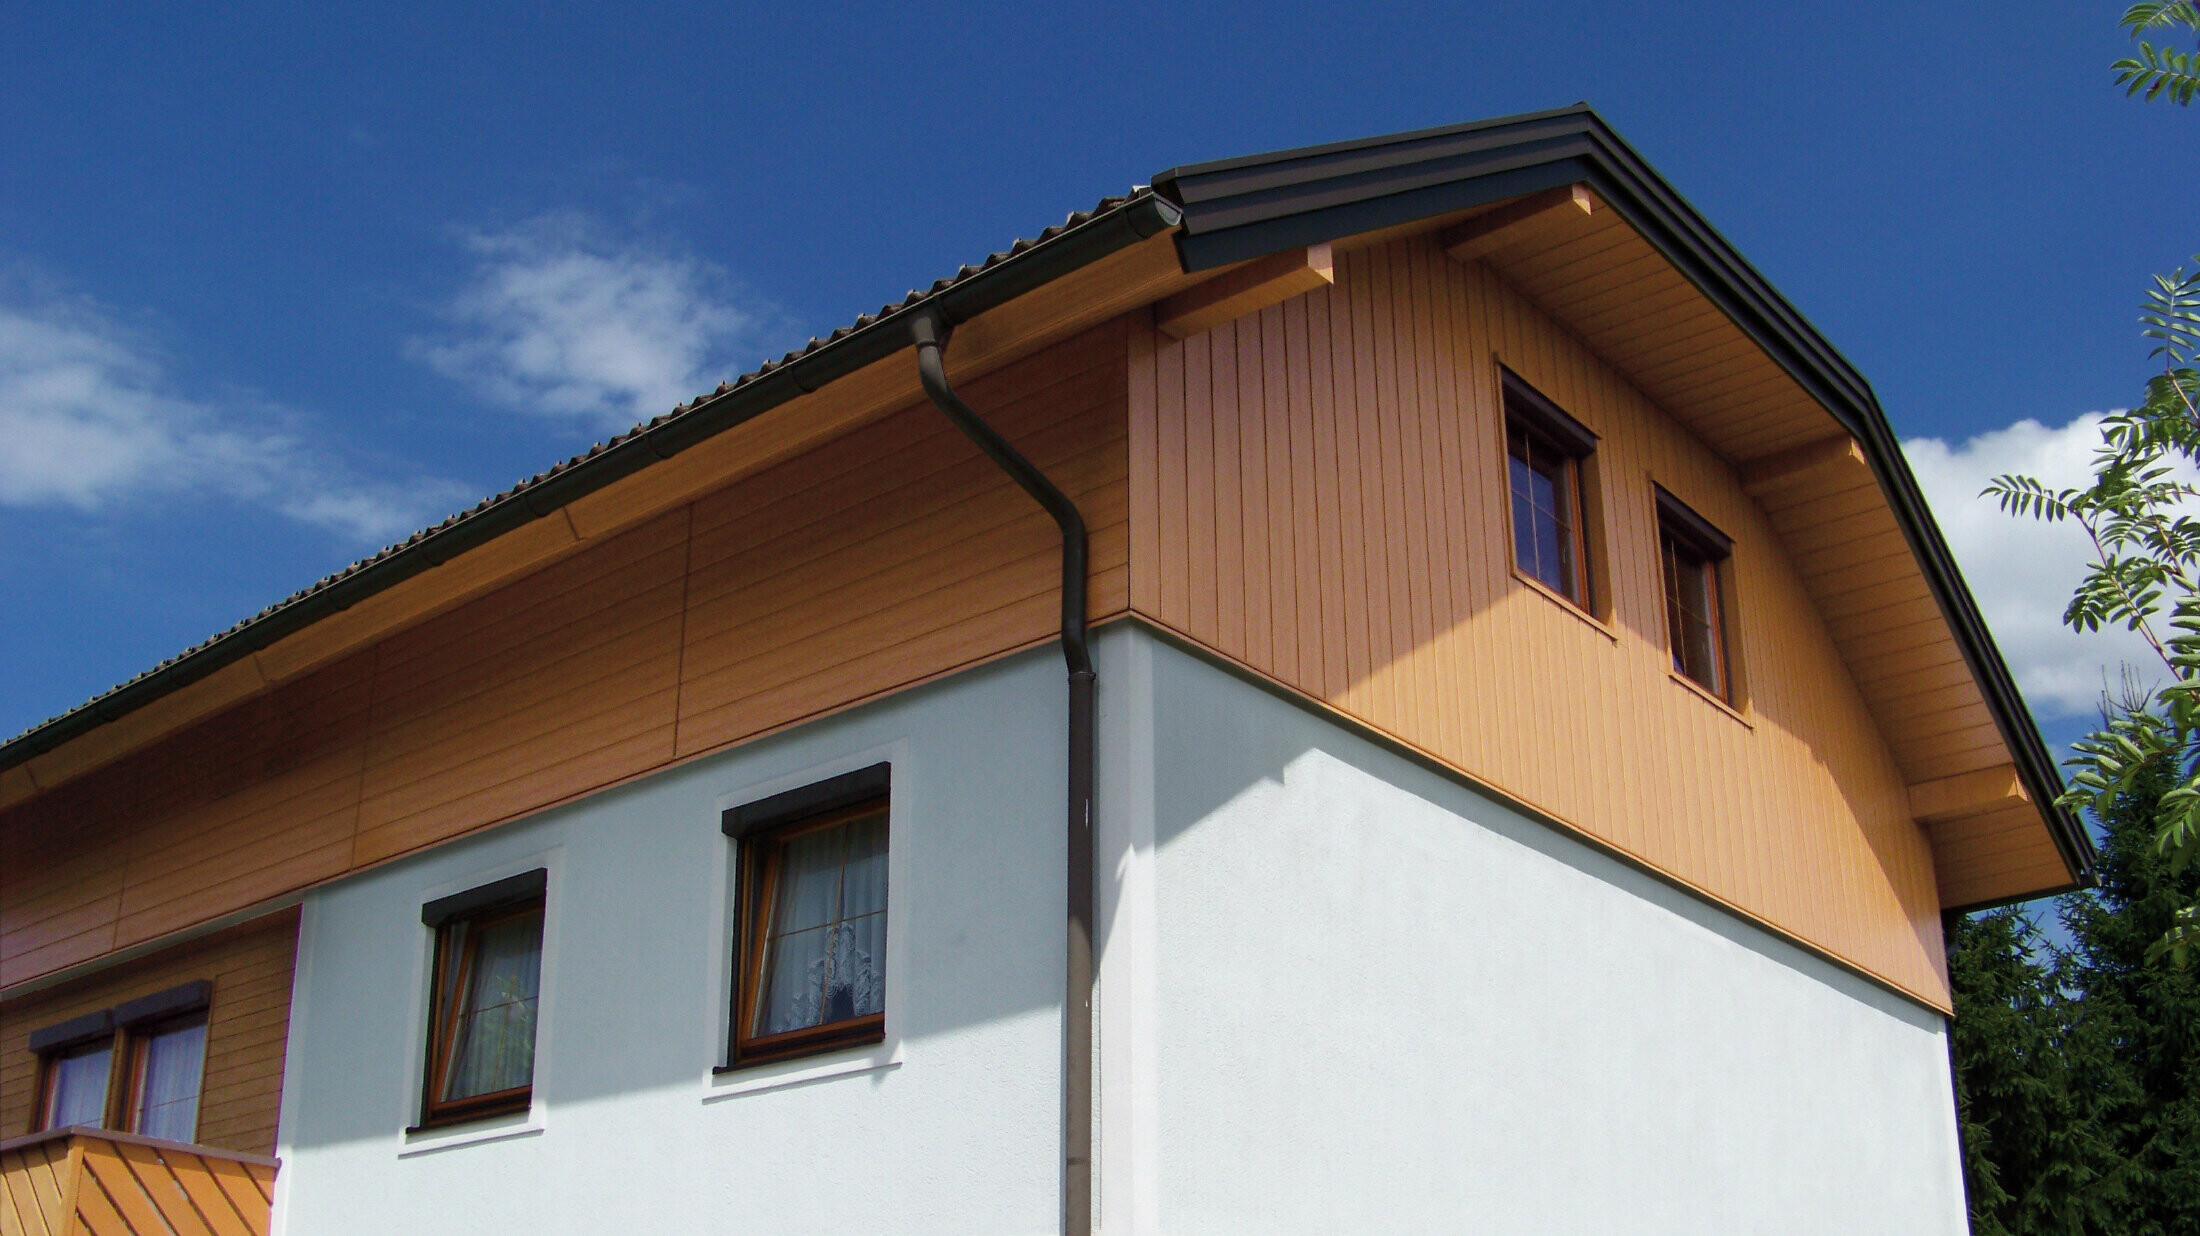 Großes Einfamilienhaus mit Krüppelwalmdach und einer Giebelverkleigung mit den PREFA Sidings in Holzoptik (Farbe Eiche natur)